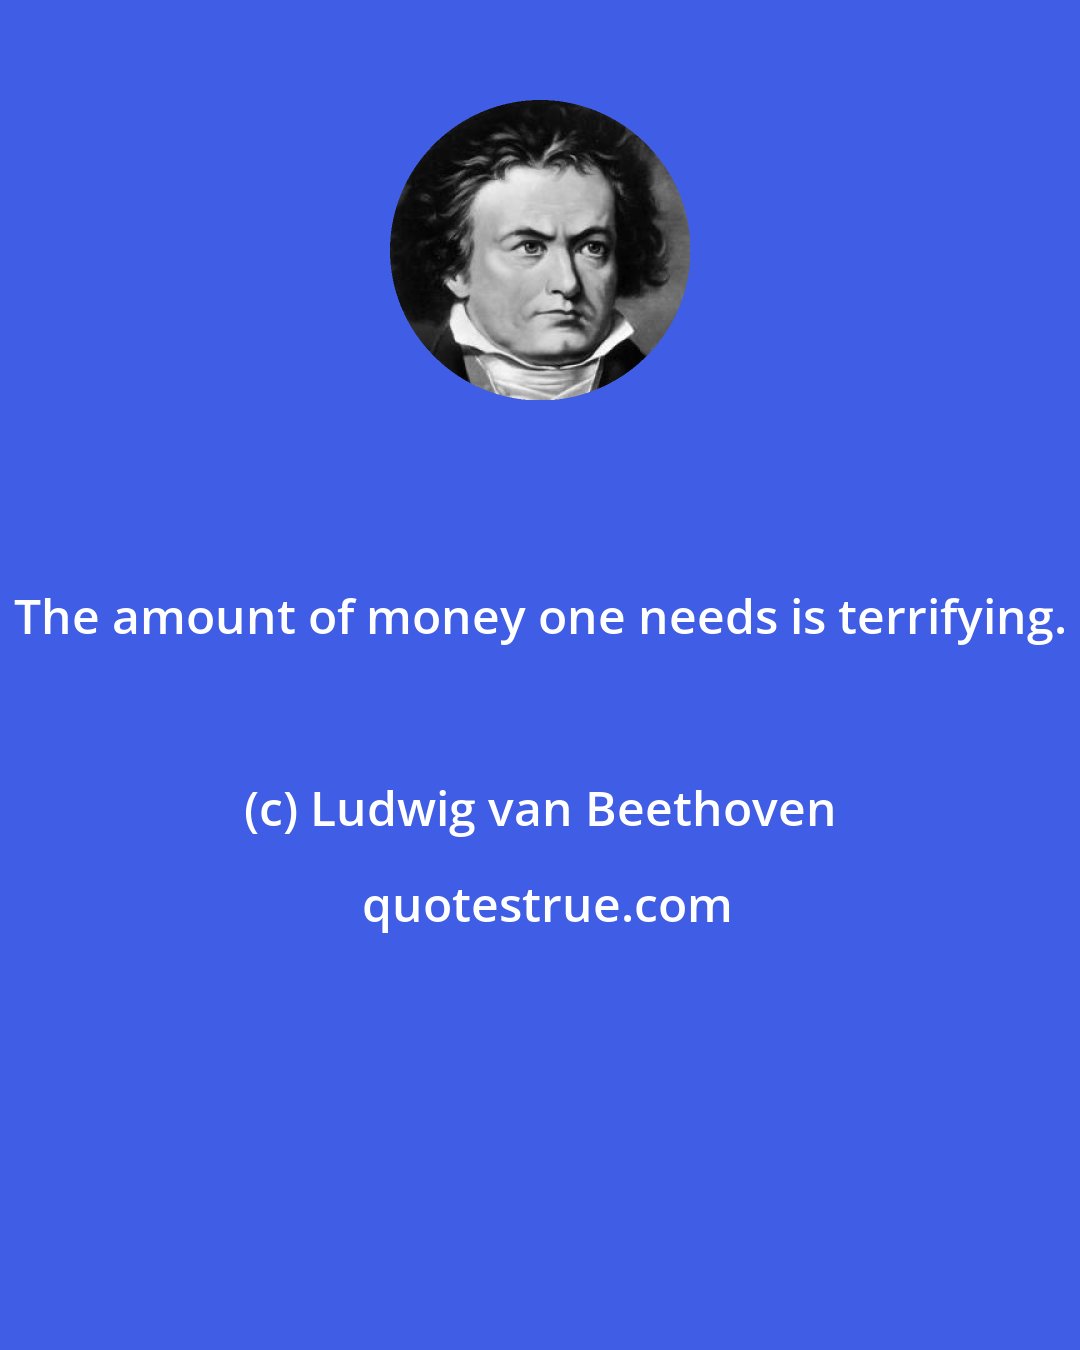 Ludwig van Beethoven: The amount of money one needs is terrifying.